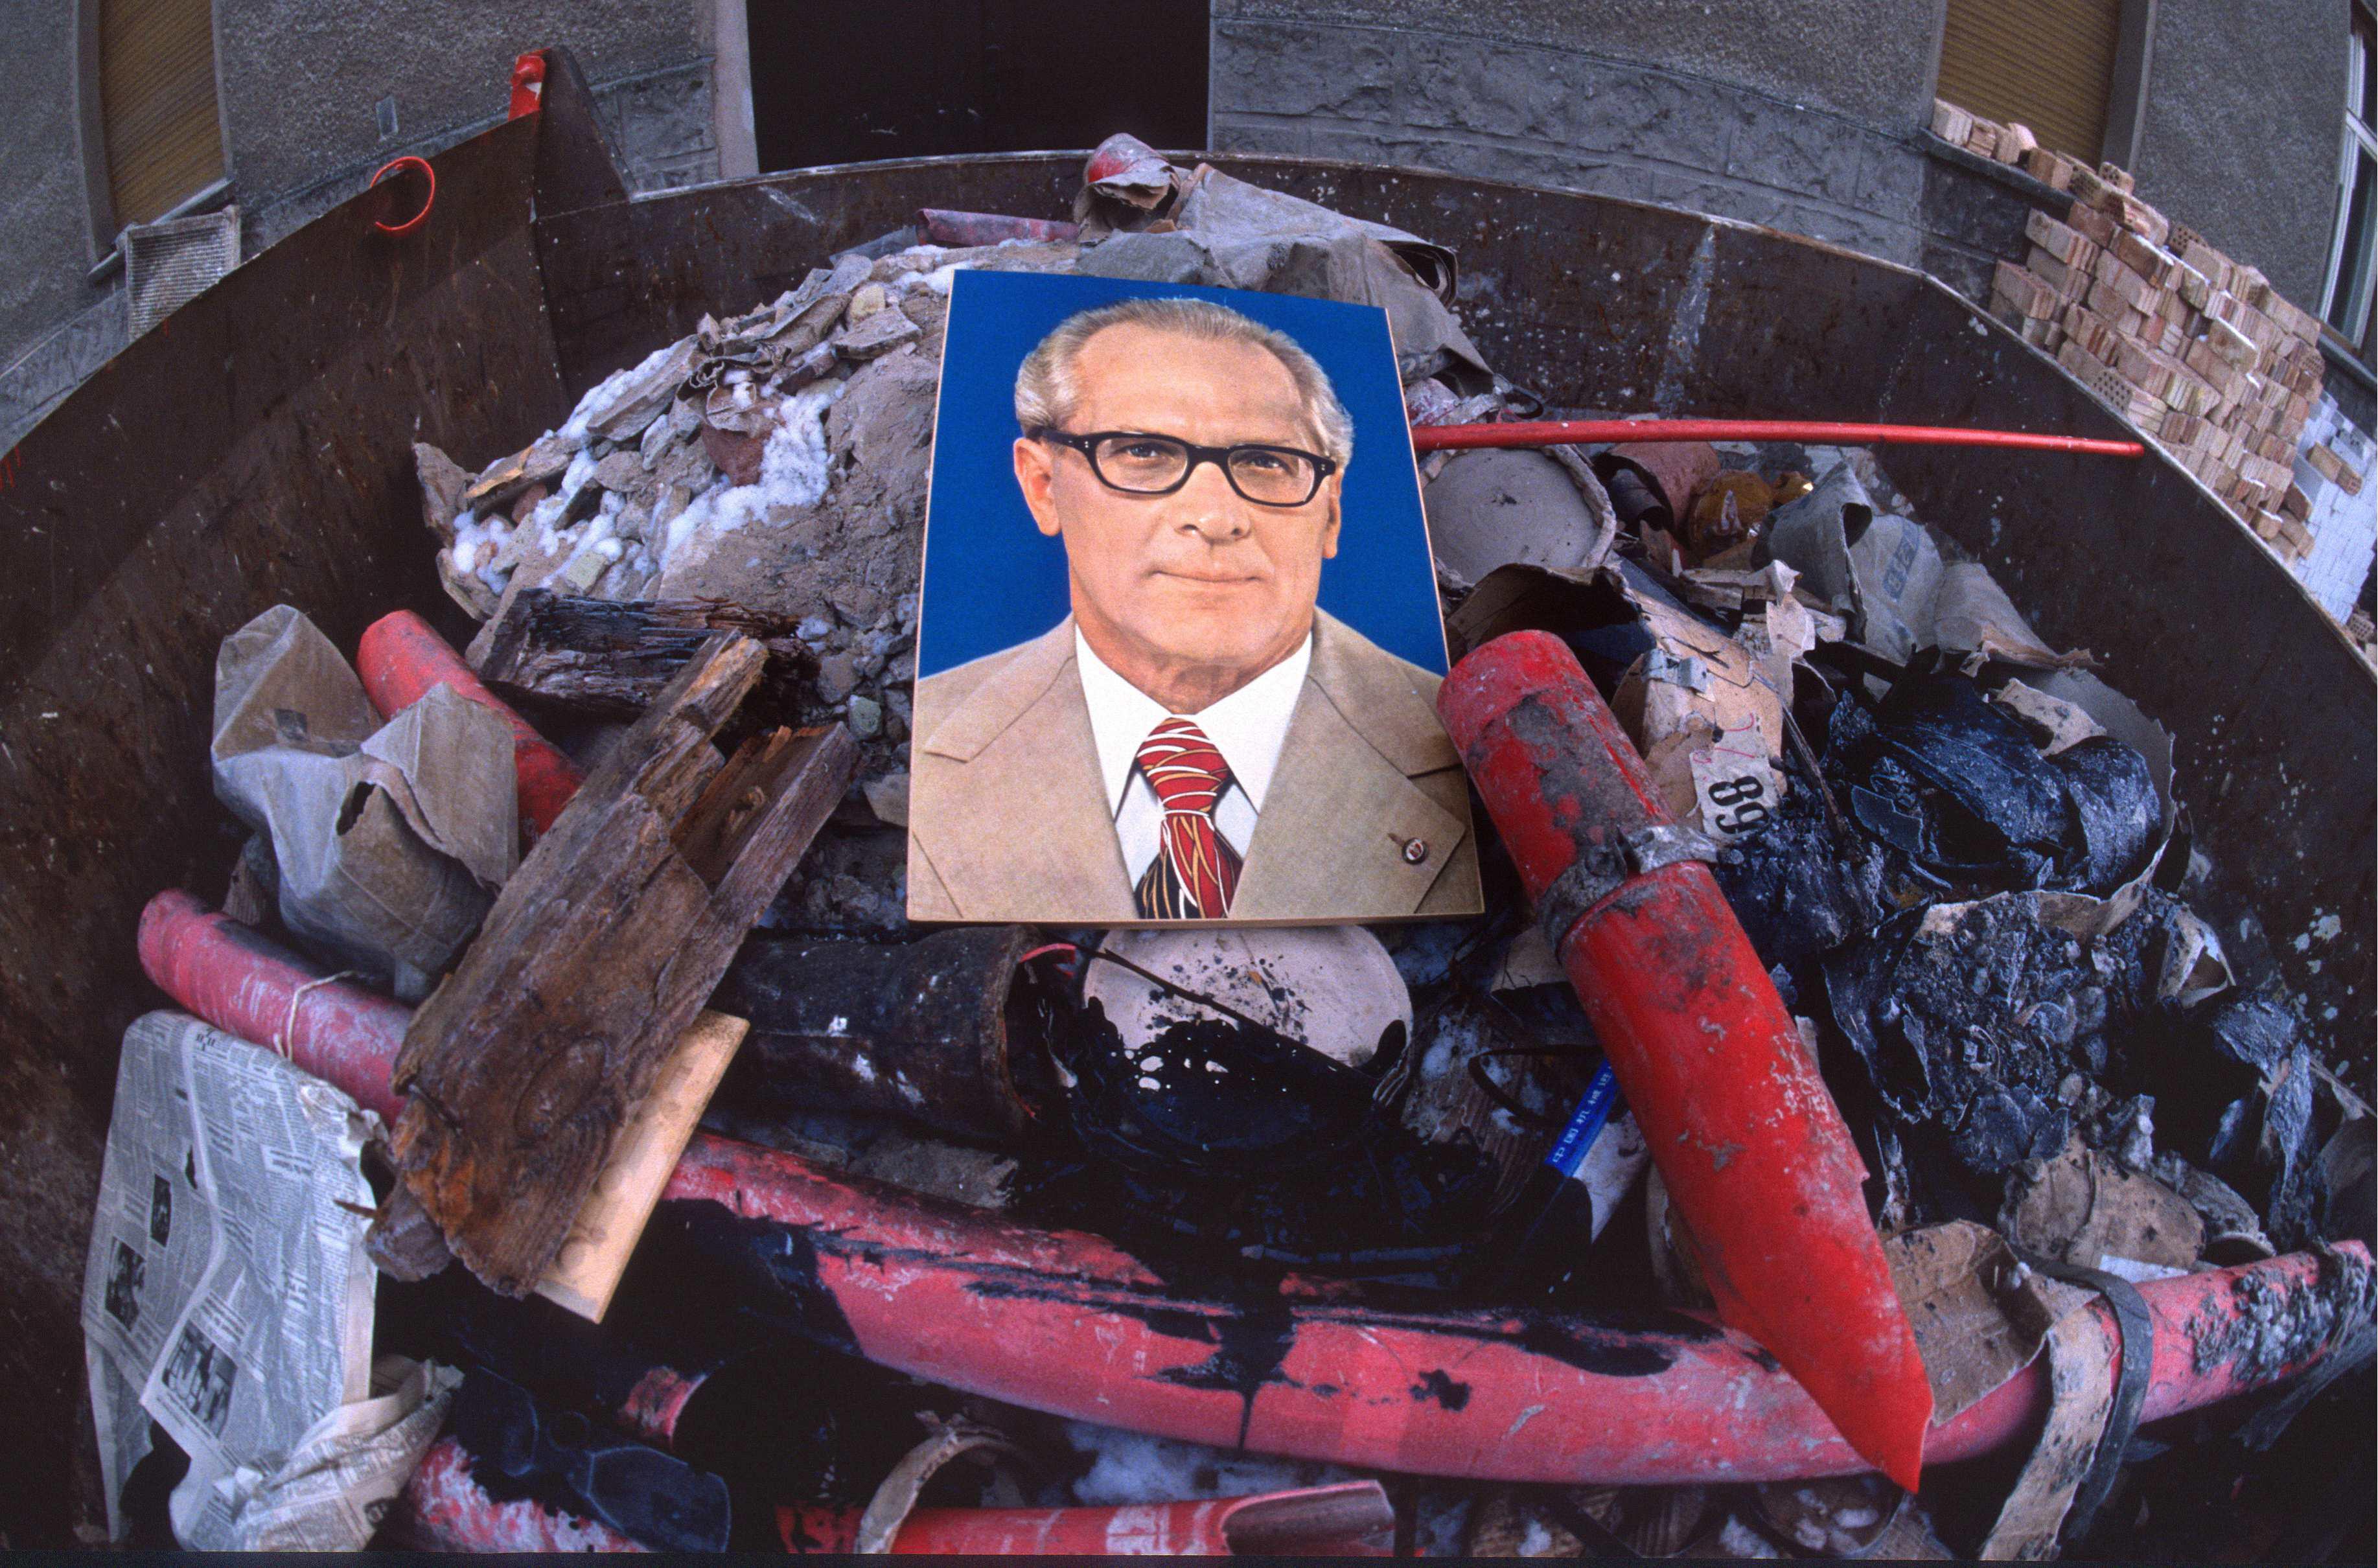 Il poster di Erich Honecker, leader della RDT, buttato tra i rifiuti (foto Manfred Vollmer/Das/Infophoto)